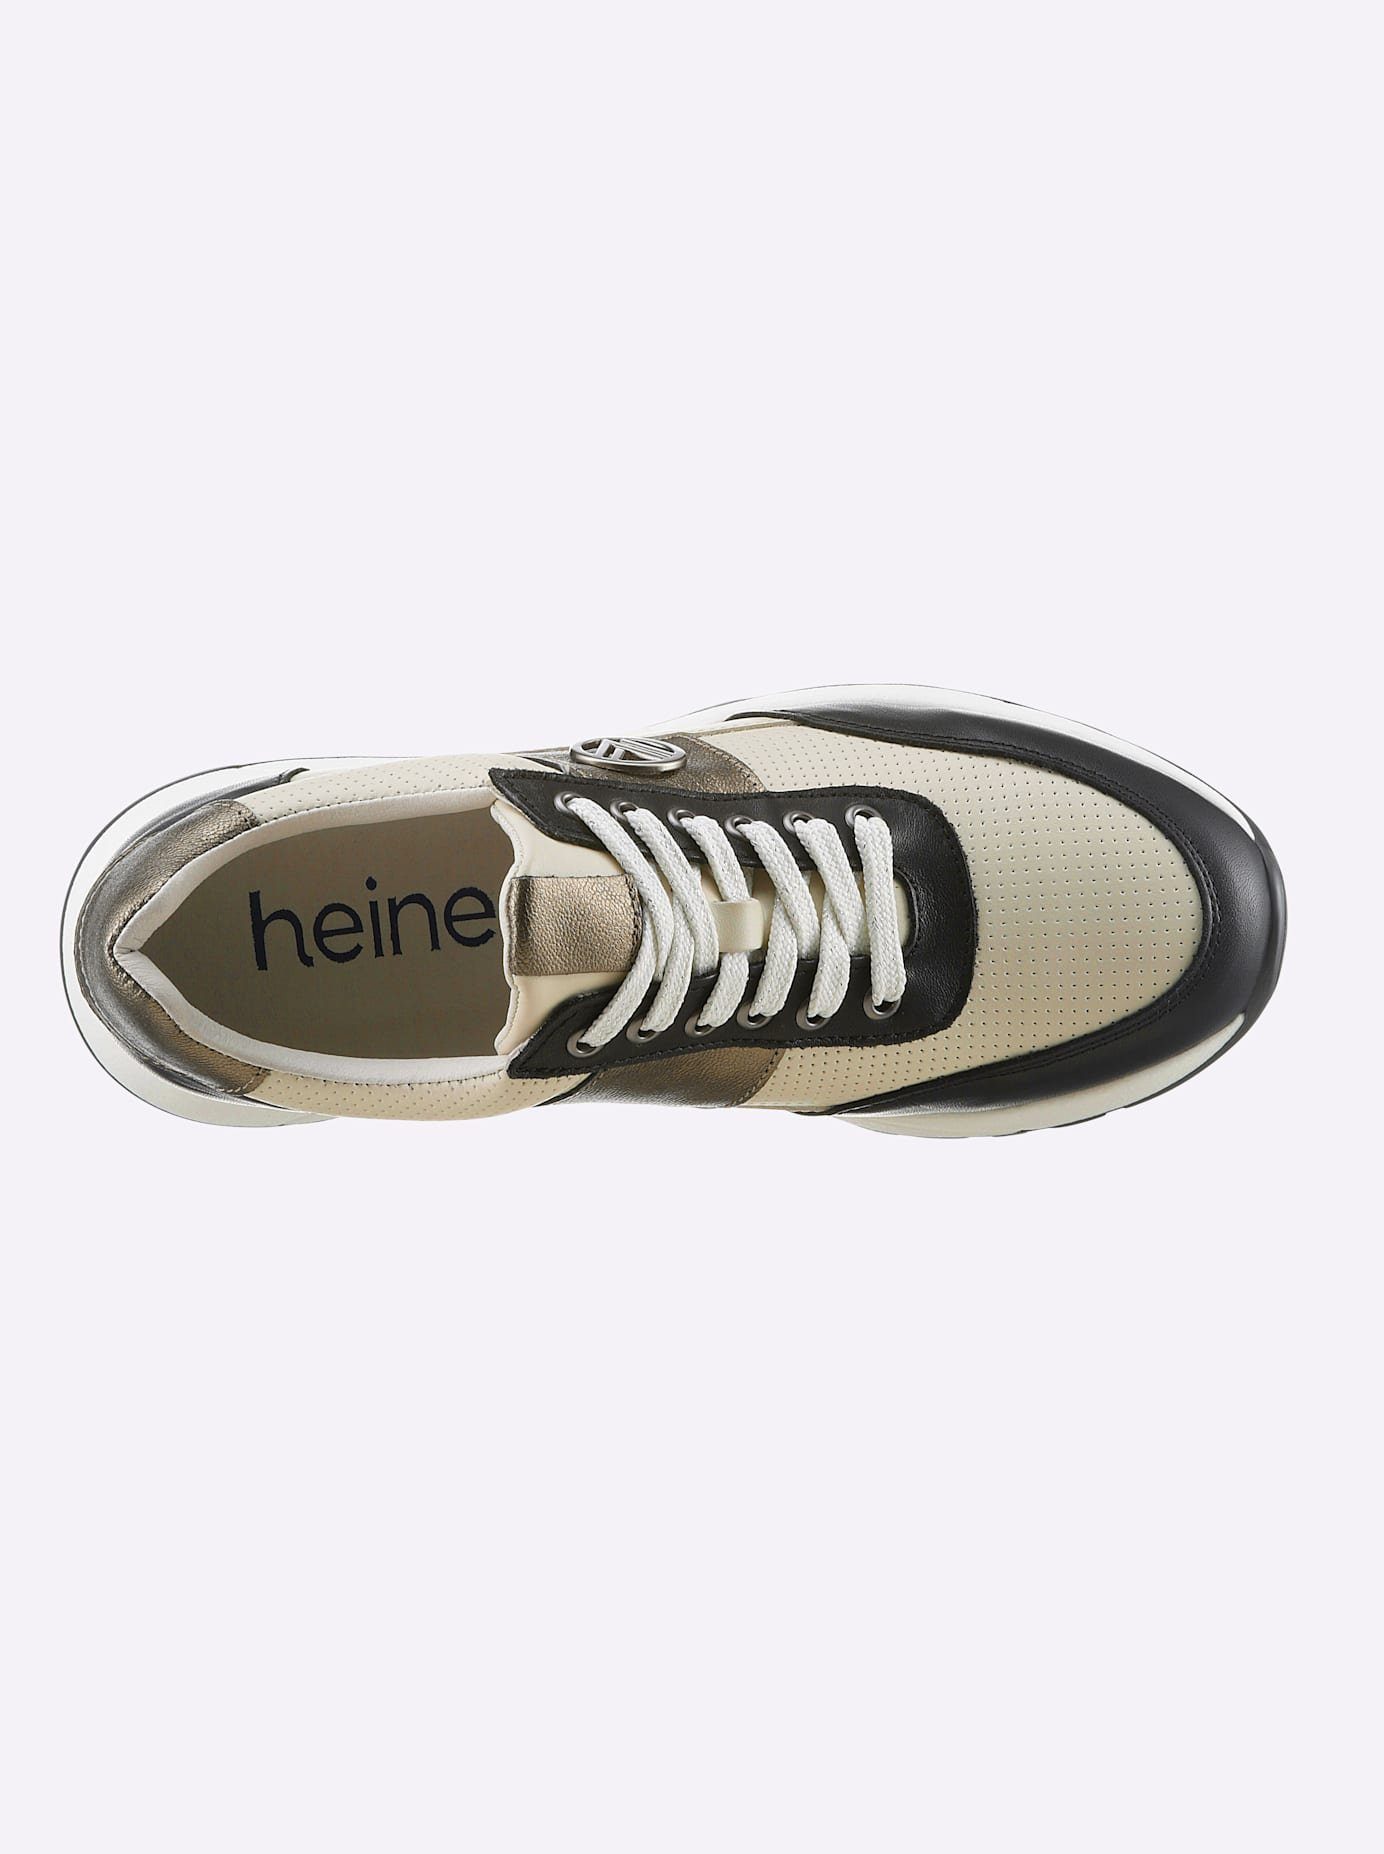 heine Sneakers